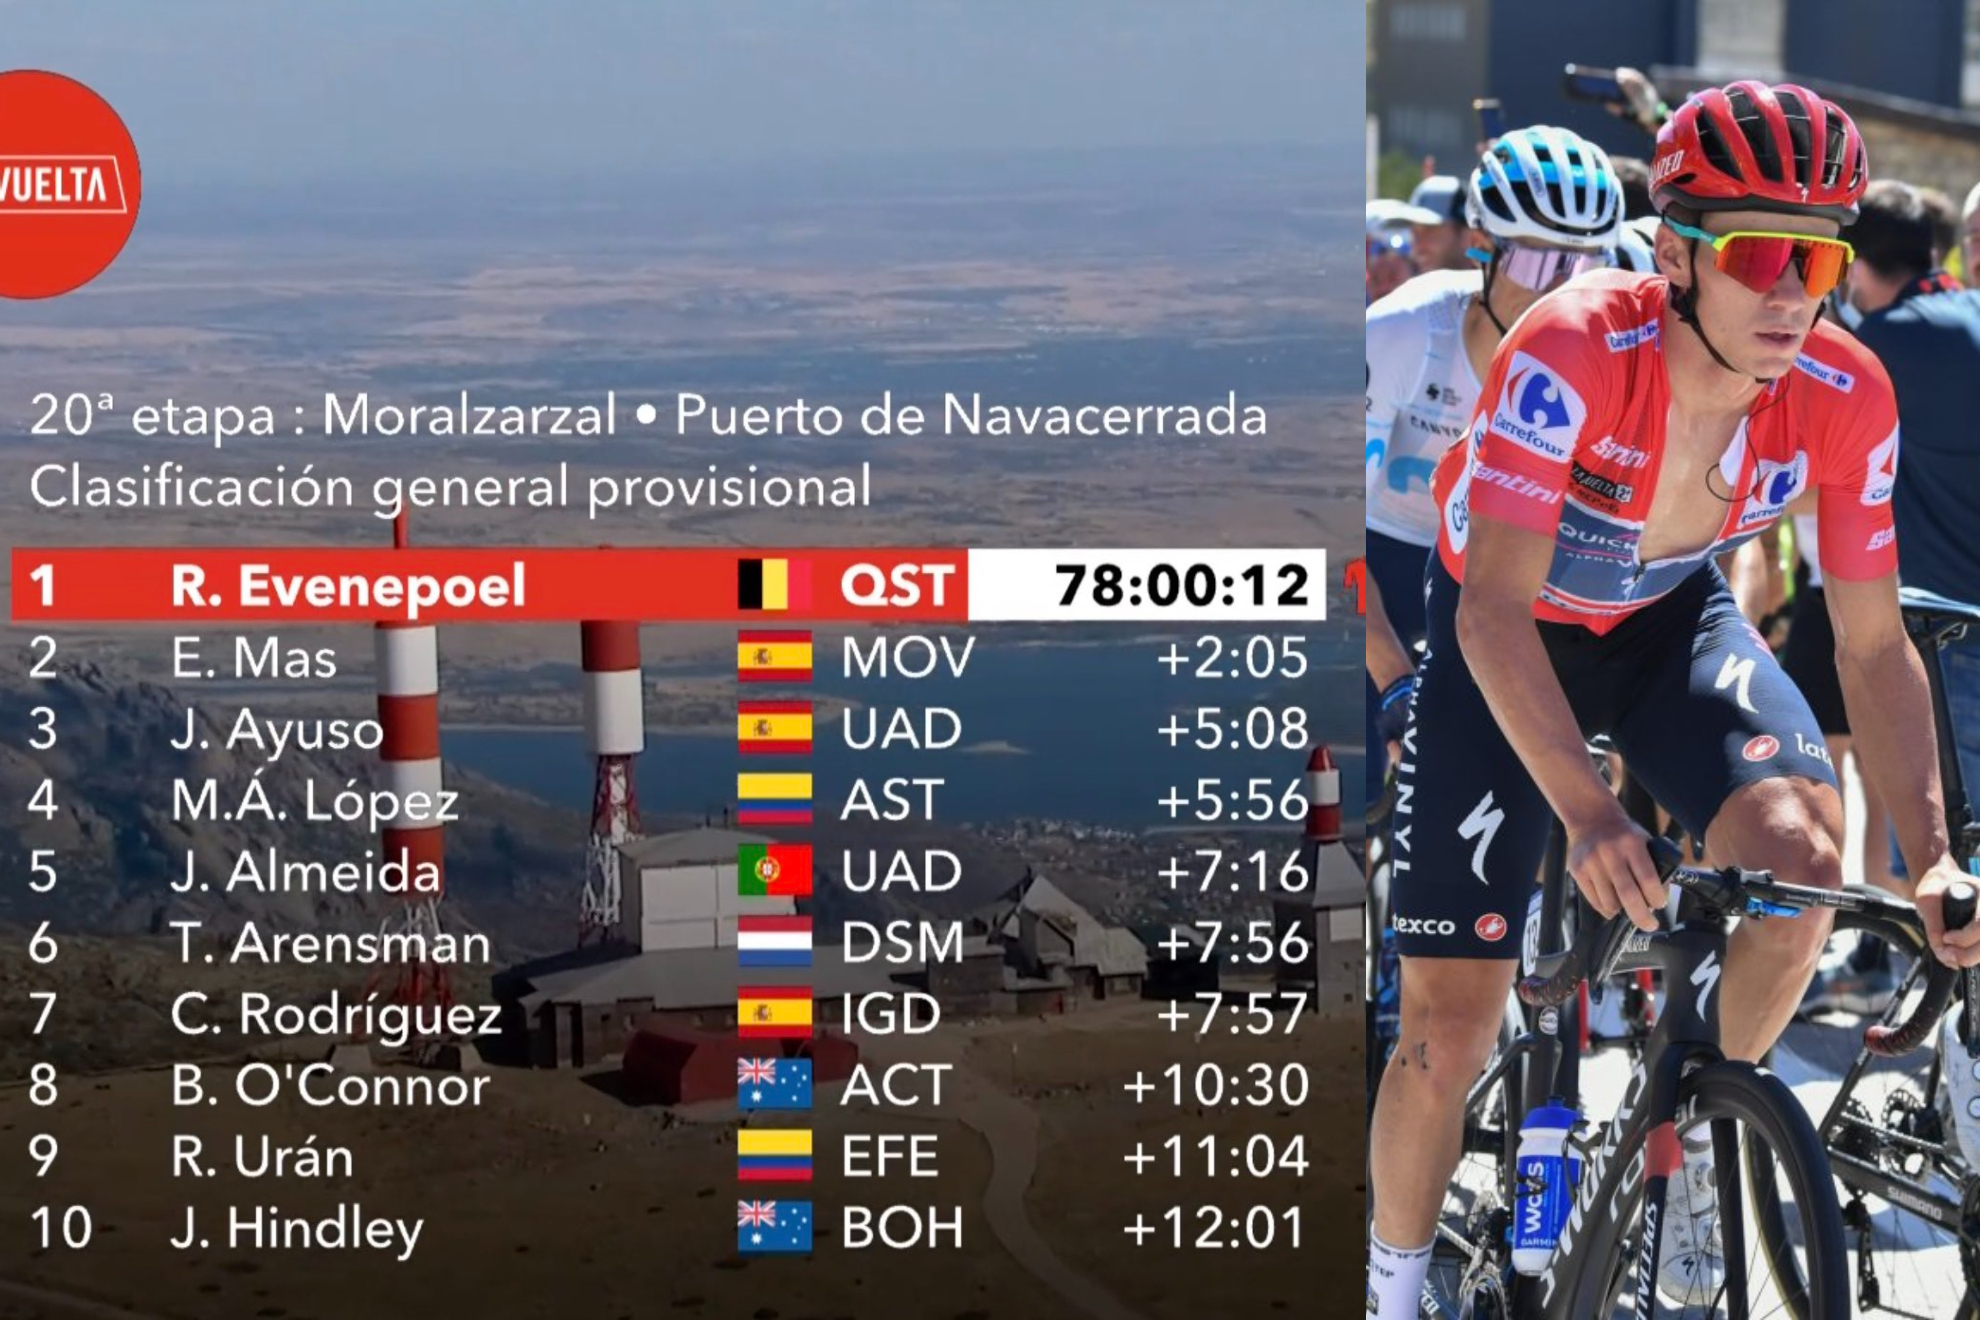 Así queda la clasificación de LaVuelta tras la etapa 20: Evenepoel ata LaVuelta con  Mas y Ayuso en el podio